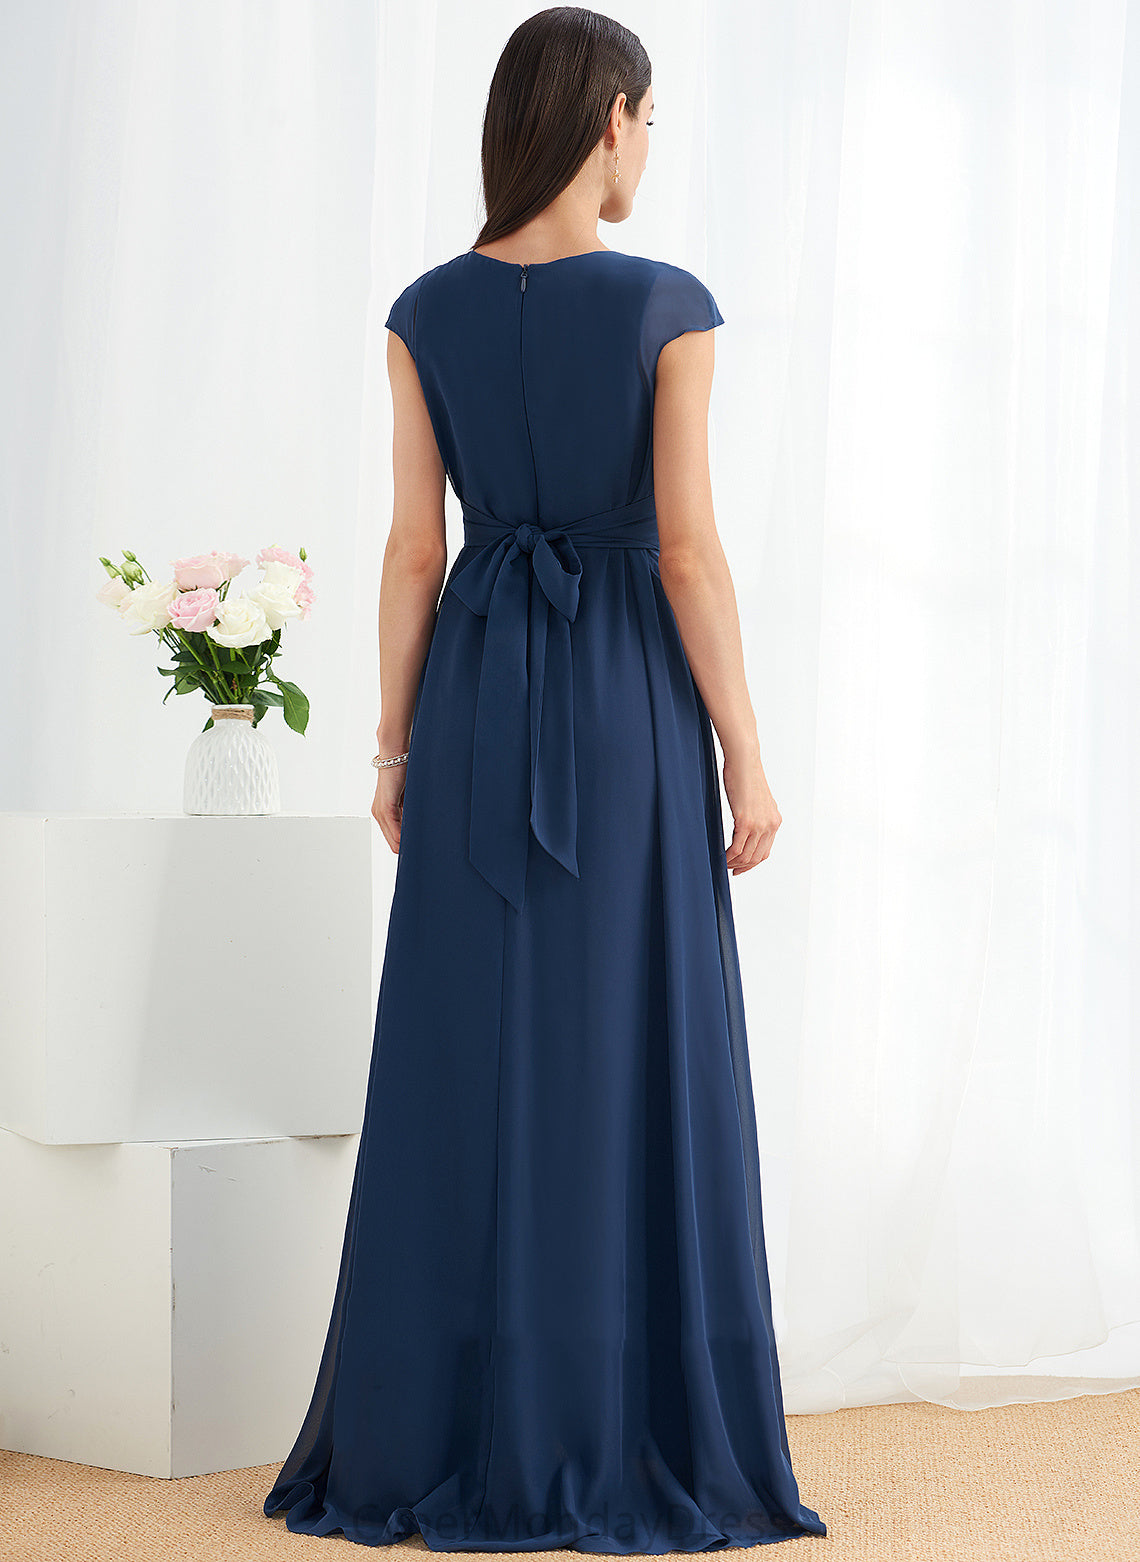 Embellishment Floor-Length Silhouette Neckline Length Ruffle A-Line Fabric V-neck Shirley Sleeveless Spandex Bridesmaid Dresses